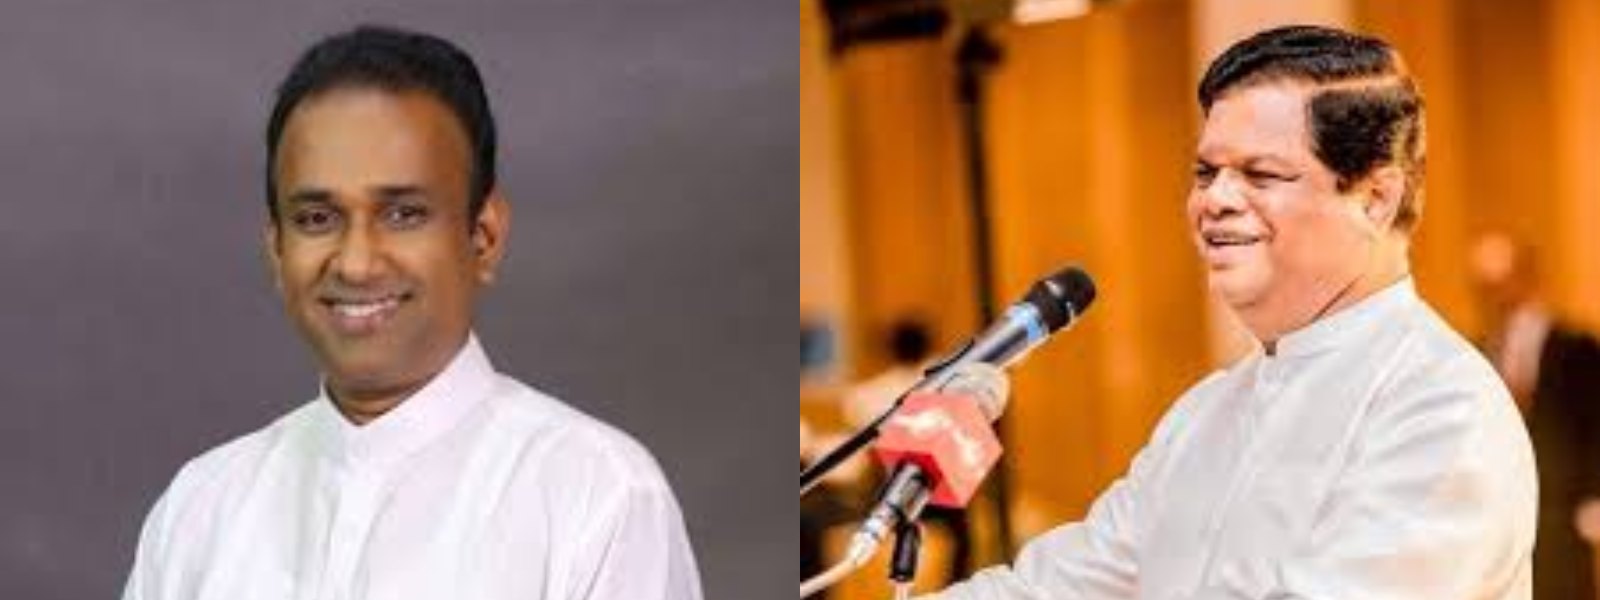 Bandula Gunawardana and Ramesh Pathirana named as co cabinet spokesperson